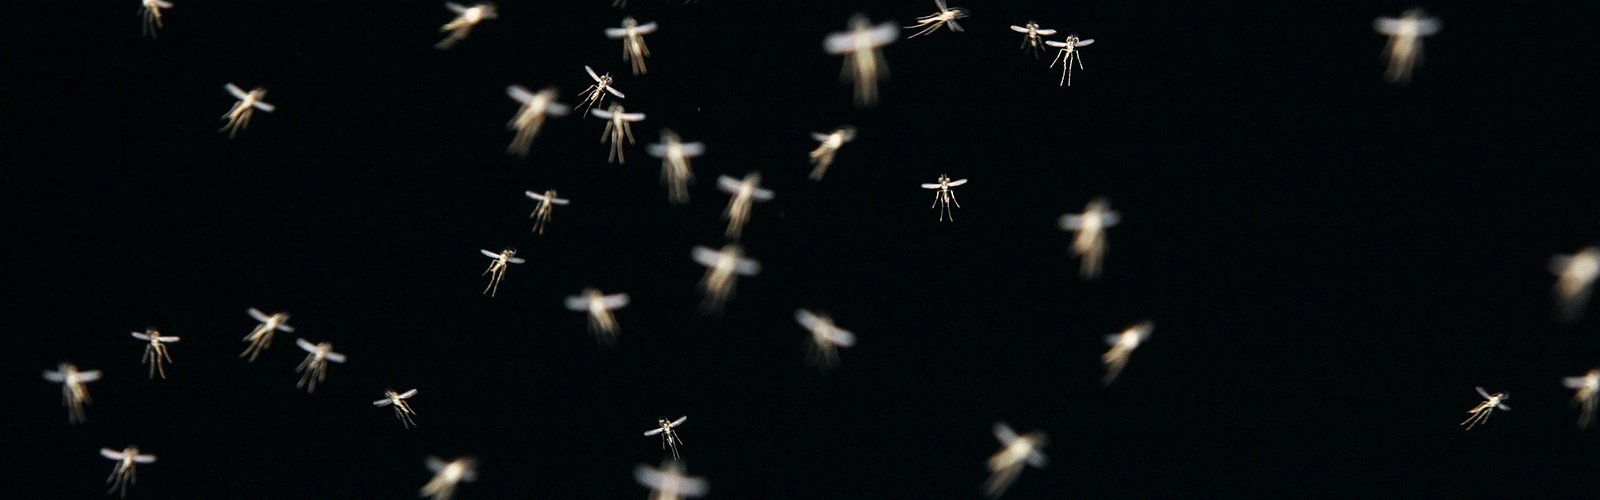 mosquito-swarm